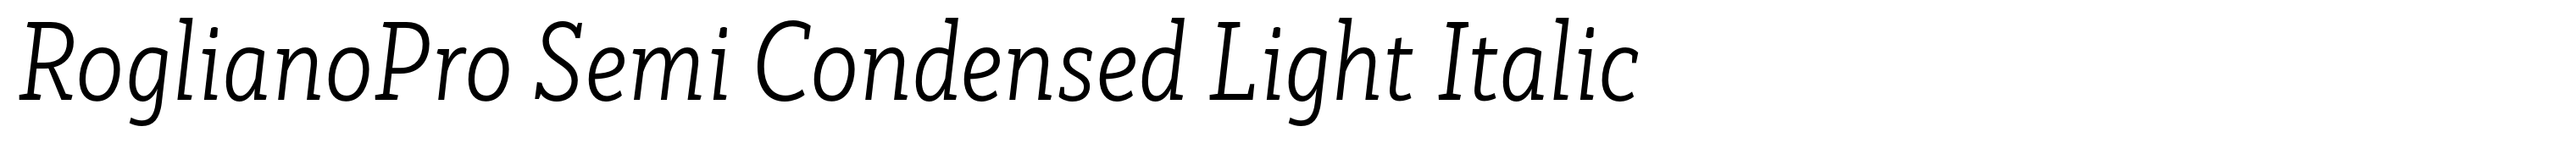 RoglianoPro Semi Condensed Light Italic